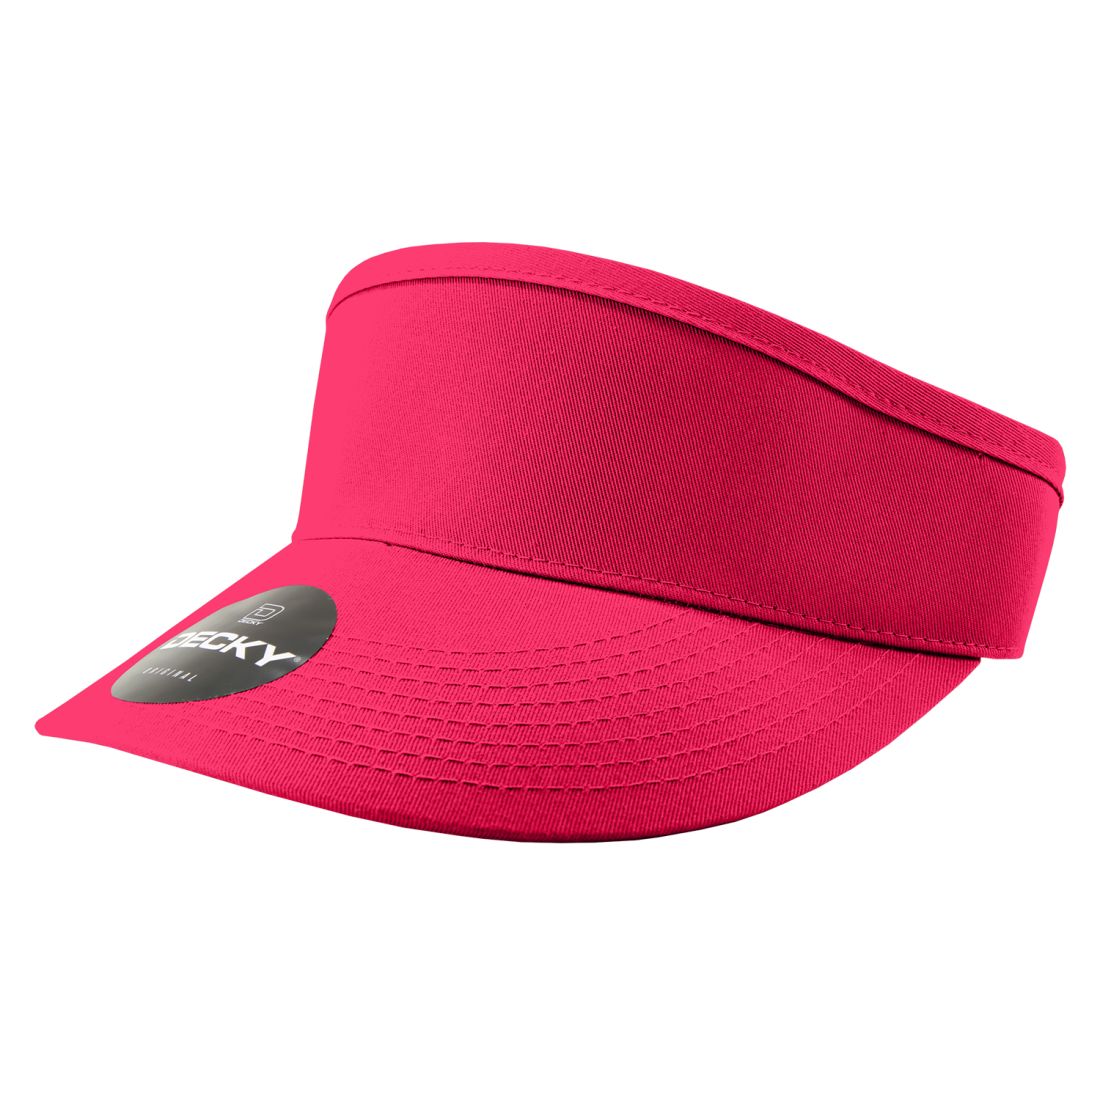 Hot Pink color variant